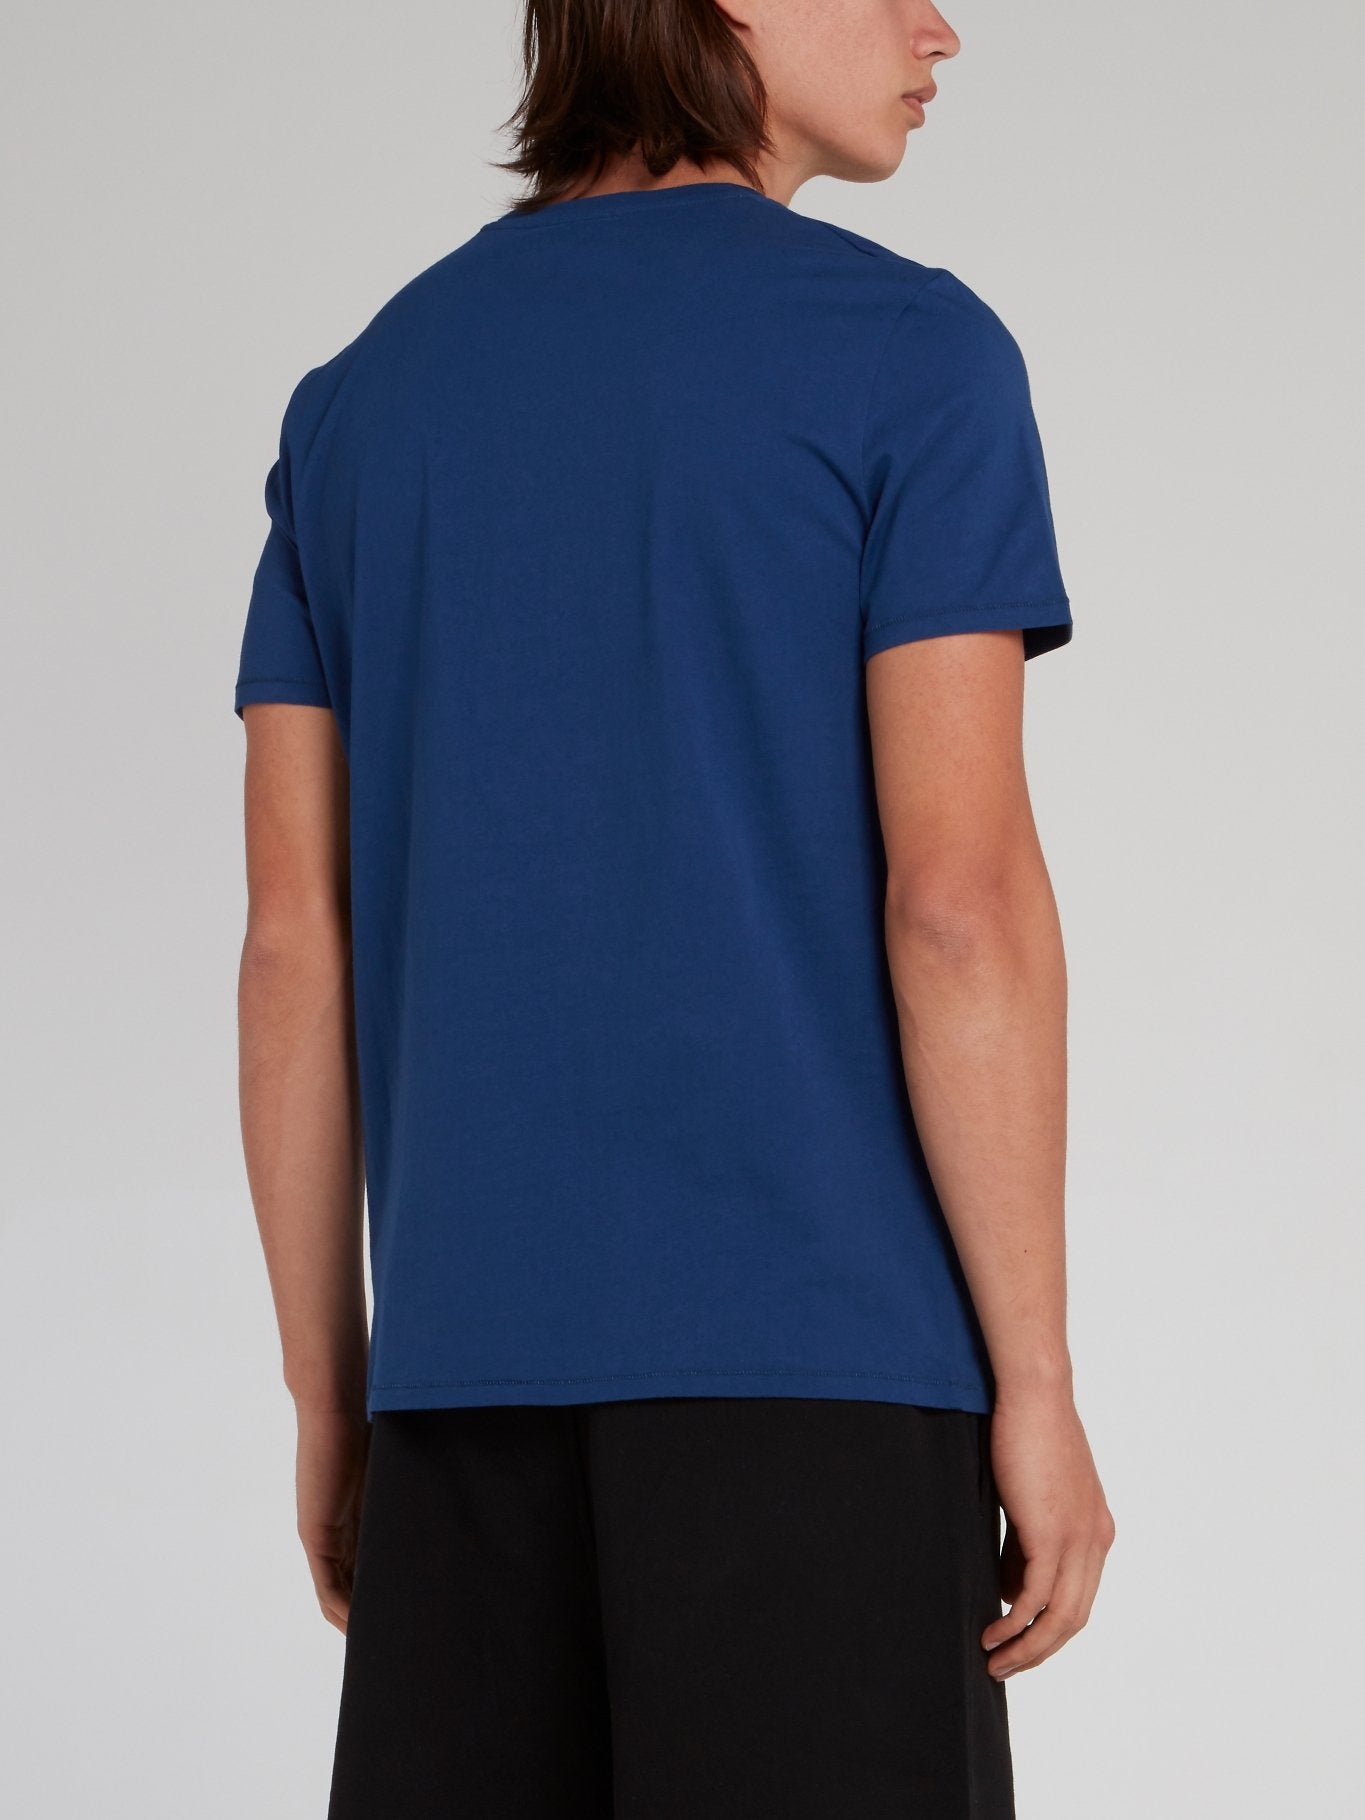 Blue Leopard Head Print T-Shirt